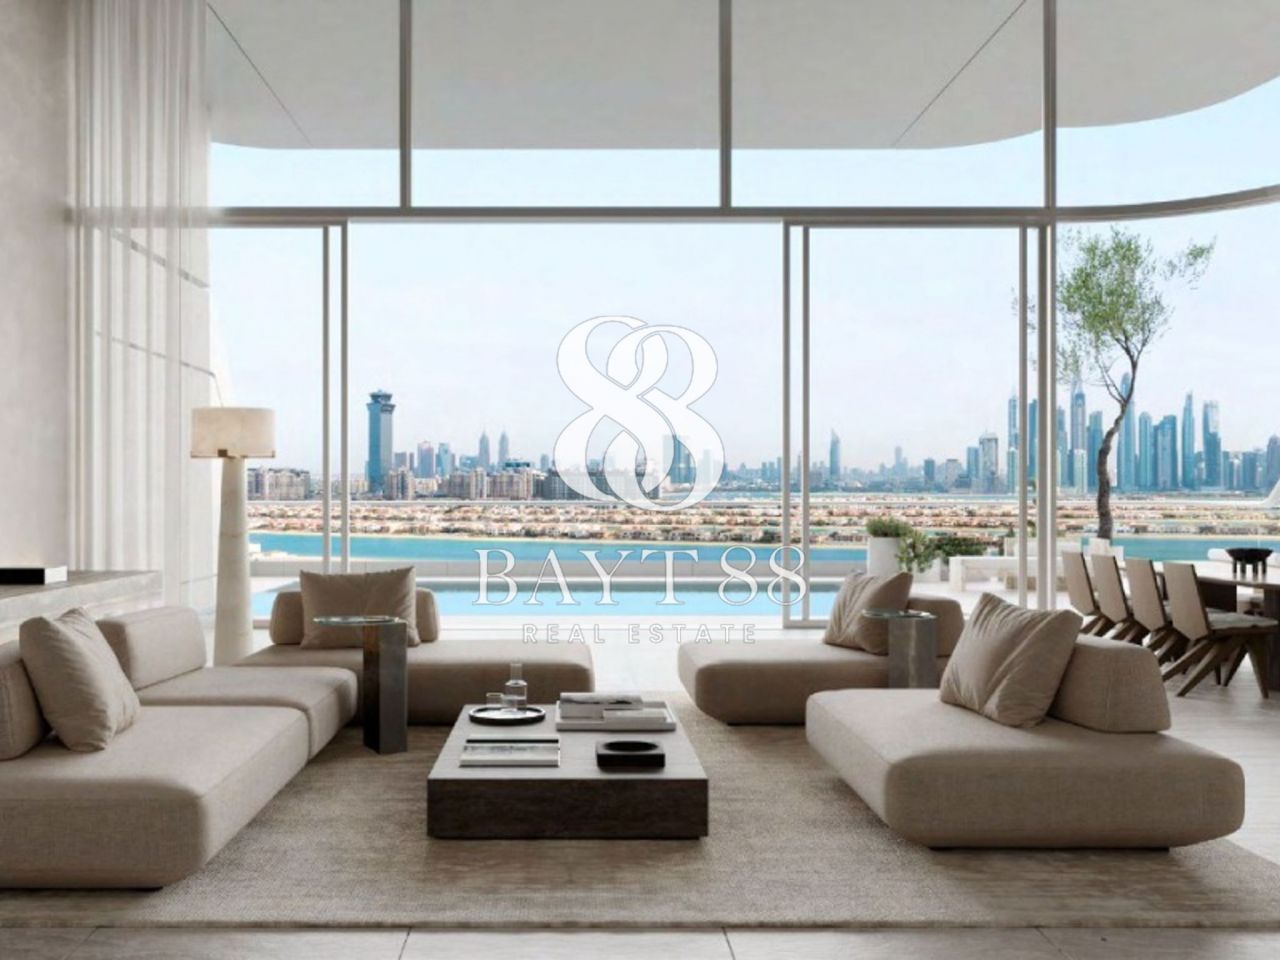 Apartment in Dubai, UAE, 586.13 sq.m - picture 1